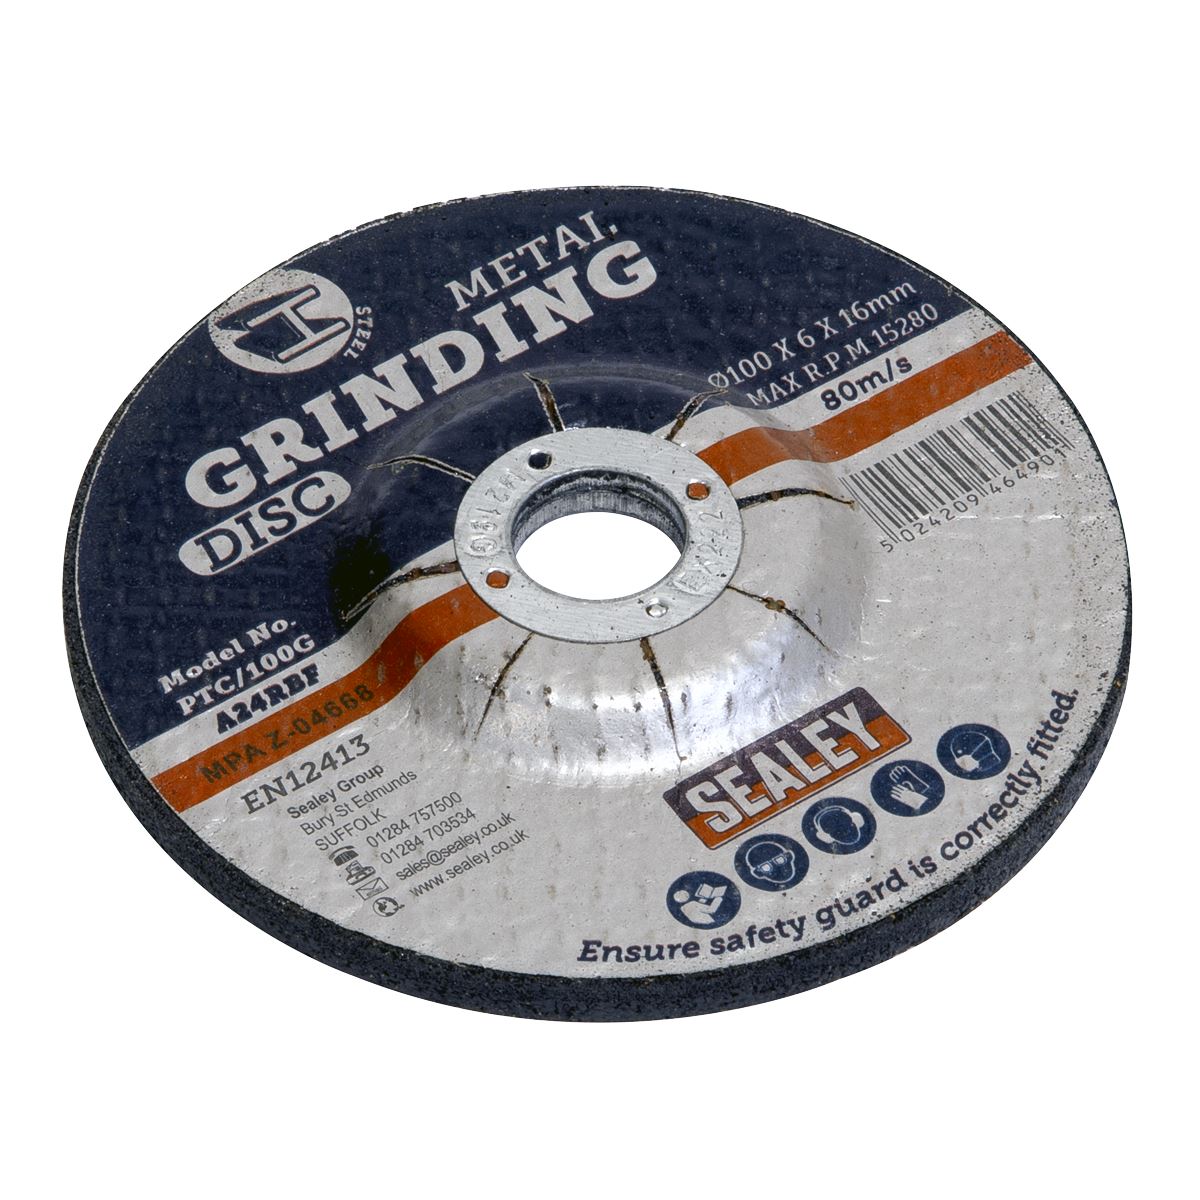 Sealey Grinding Disc Ø100 x 6mm Ø16mm Bore